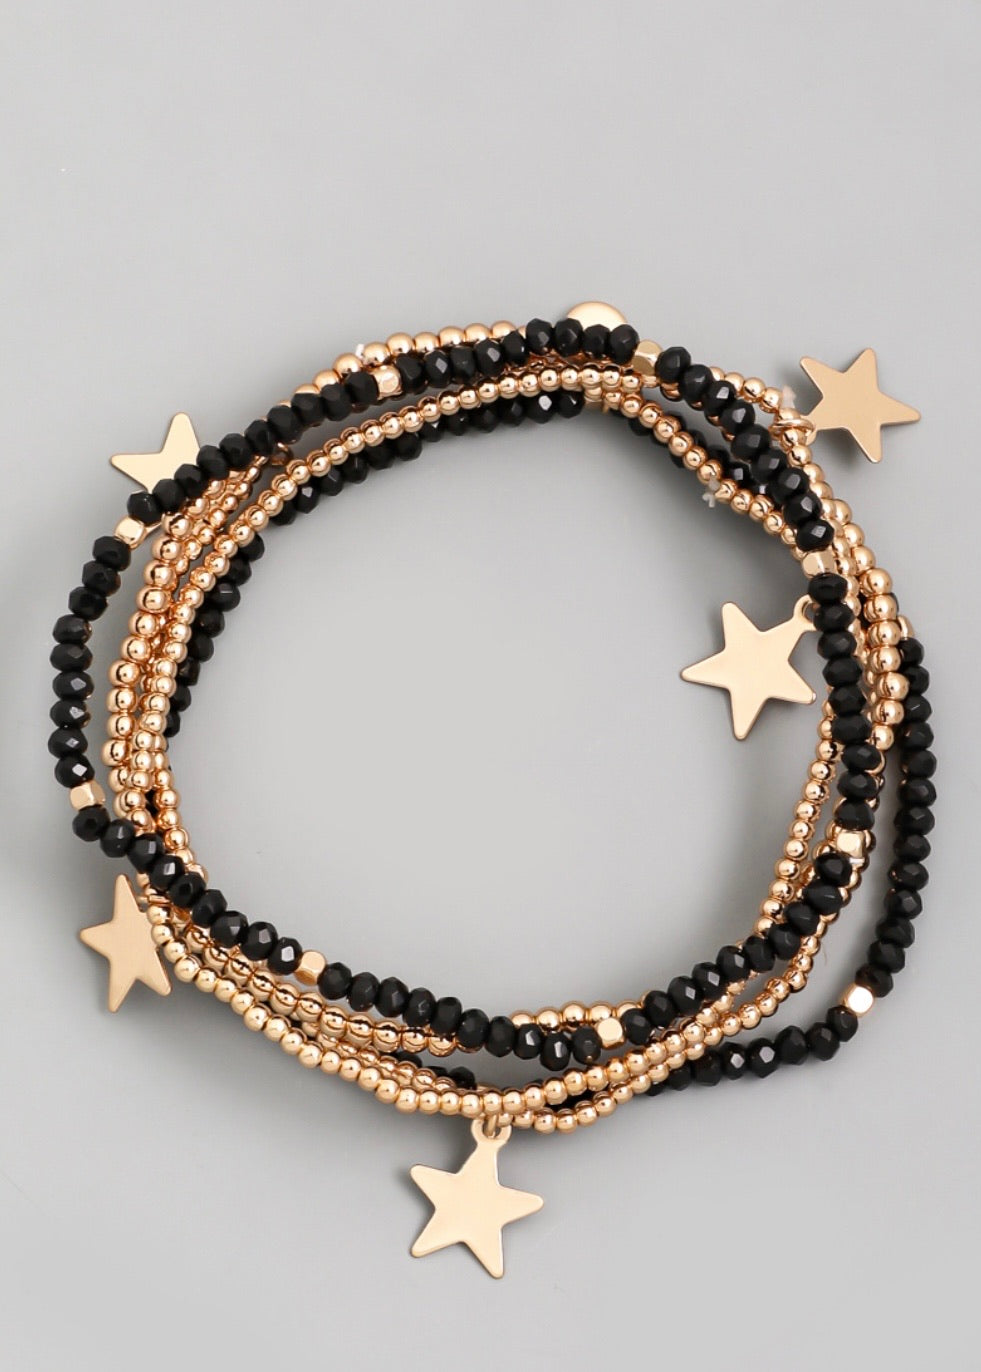 Black Beaded Star Bracelet